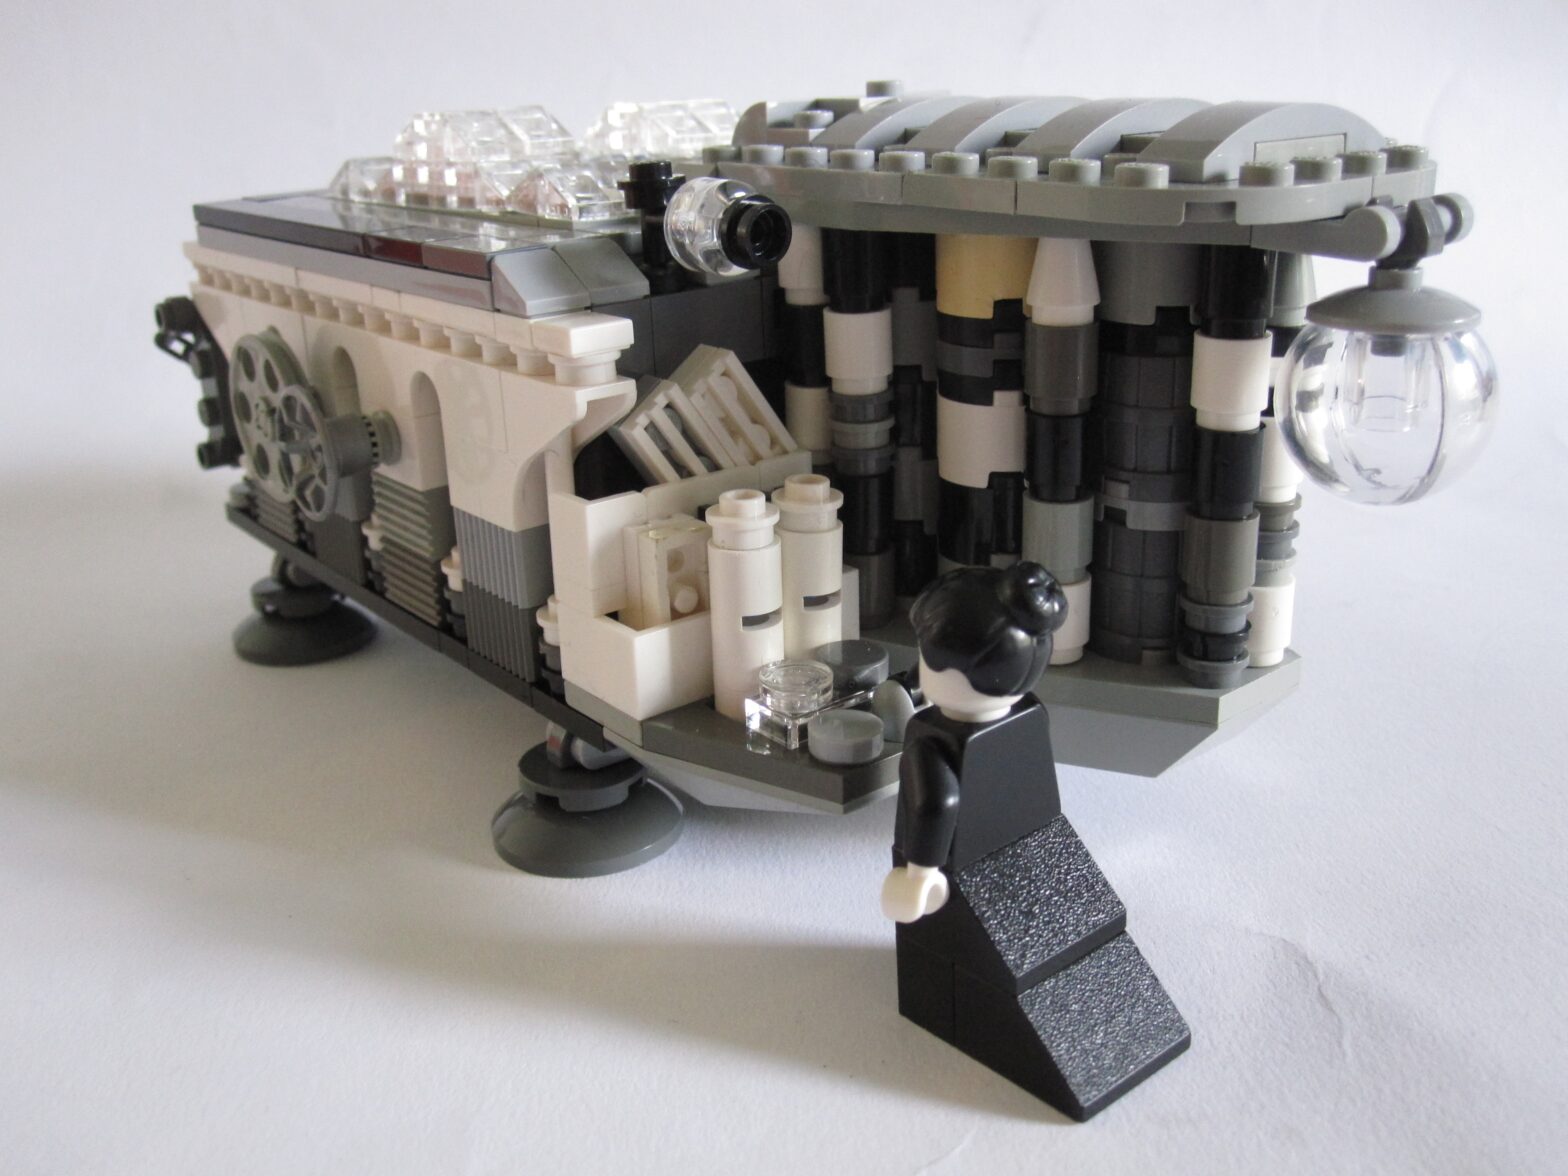 Ada Lovelace operating the LEGO Analytical Engine.